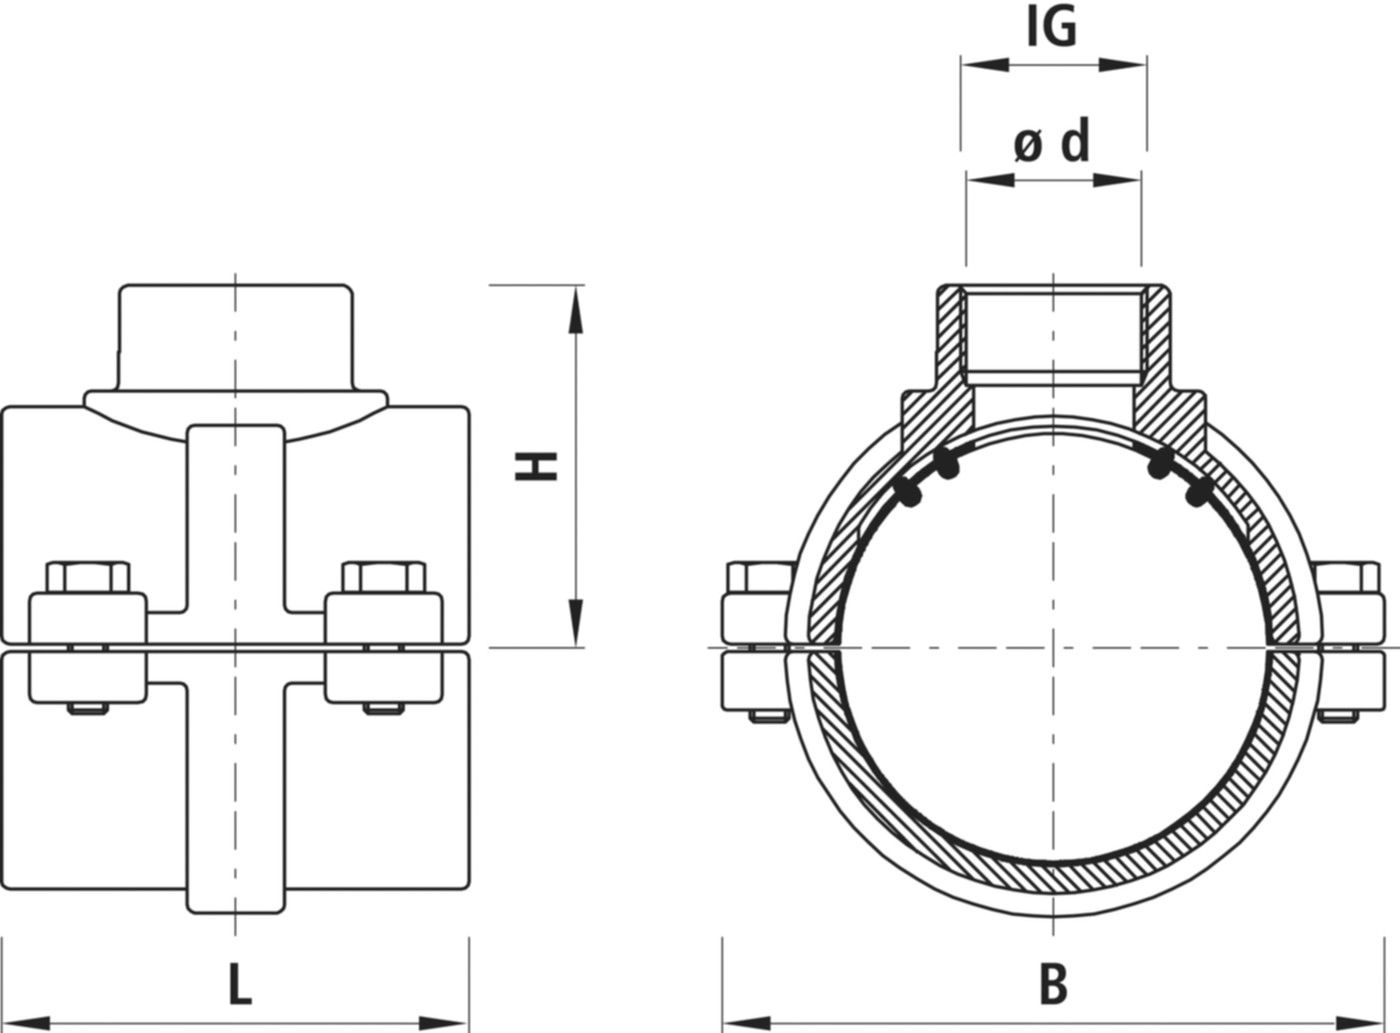 Haku-Anbohrschelle mit IG für Gas 5255 d 63mm - 1 1/2" - Hawle Hausanschluss- und Anbohrarmaturen